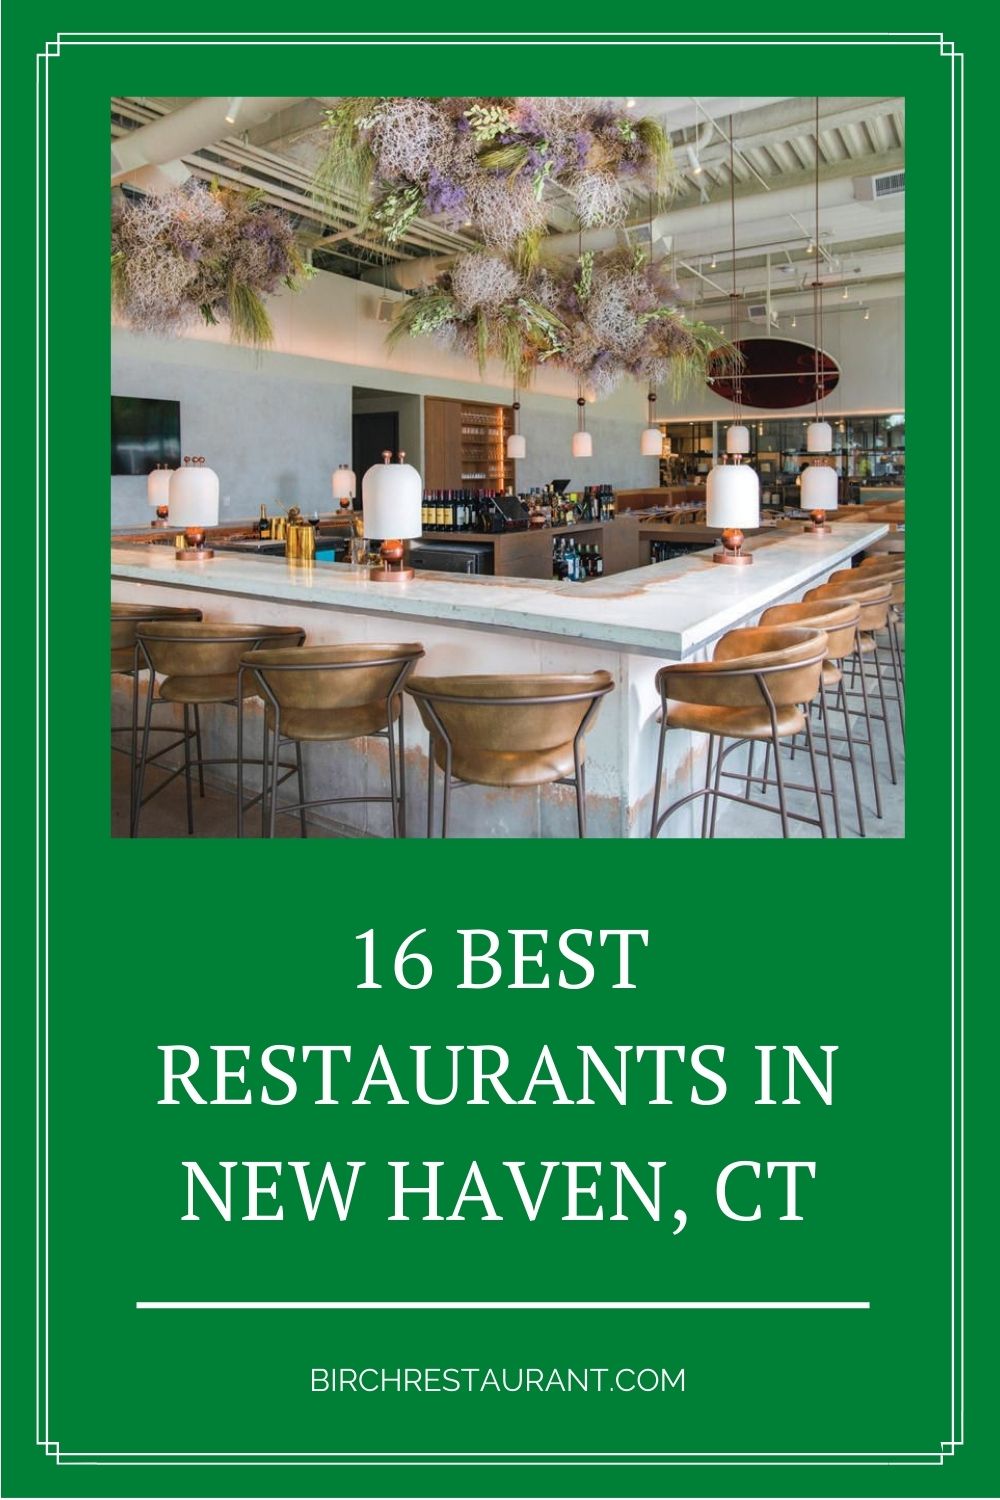 Best Restaurants in New Haven